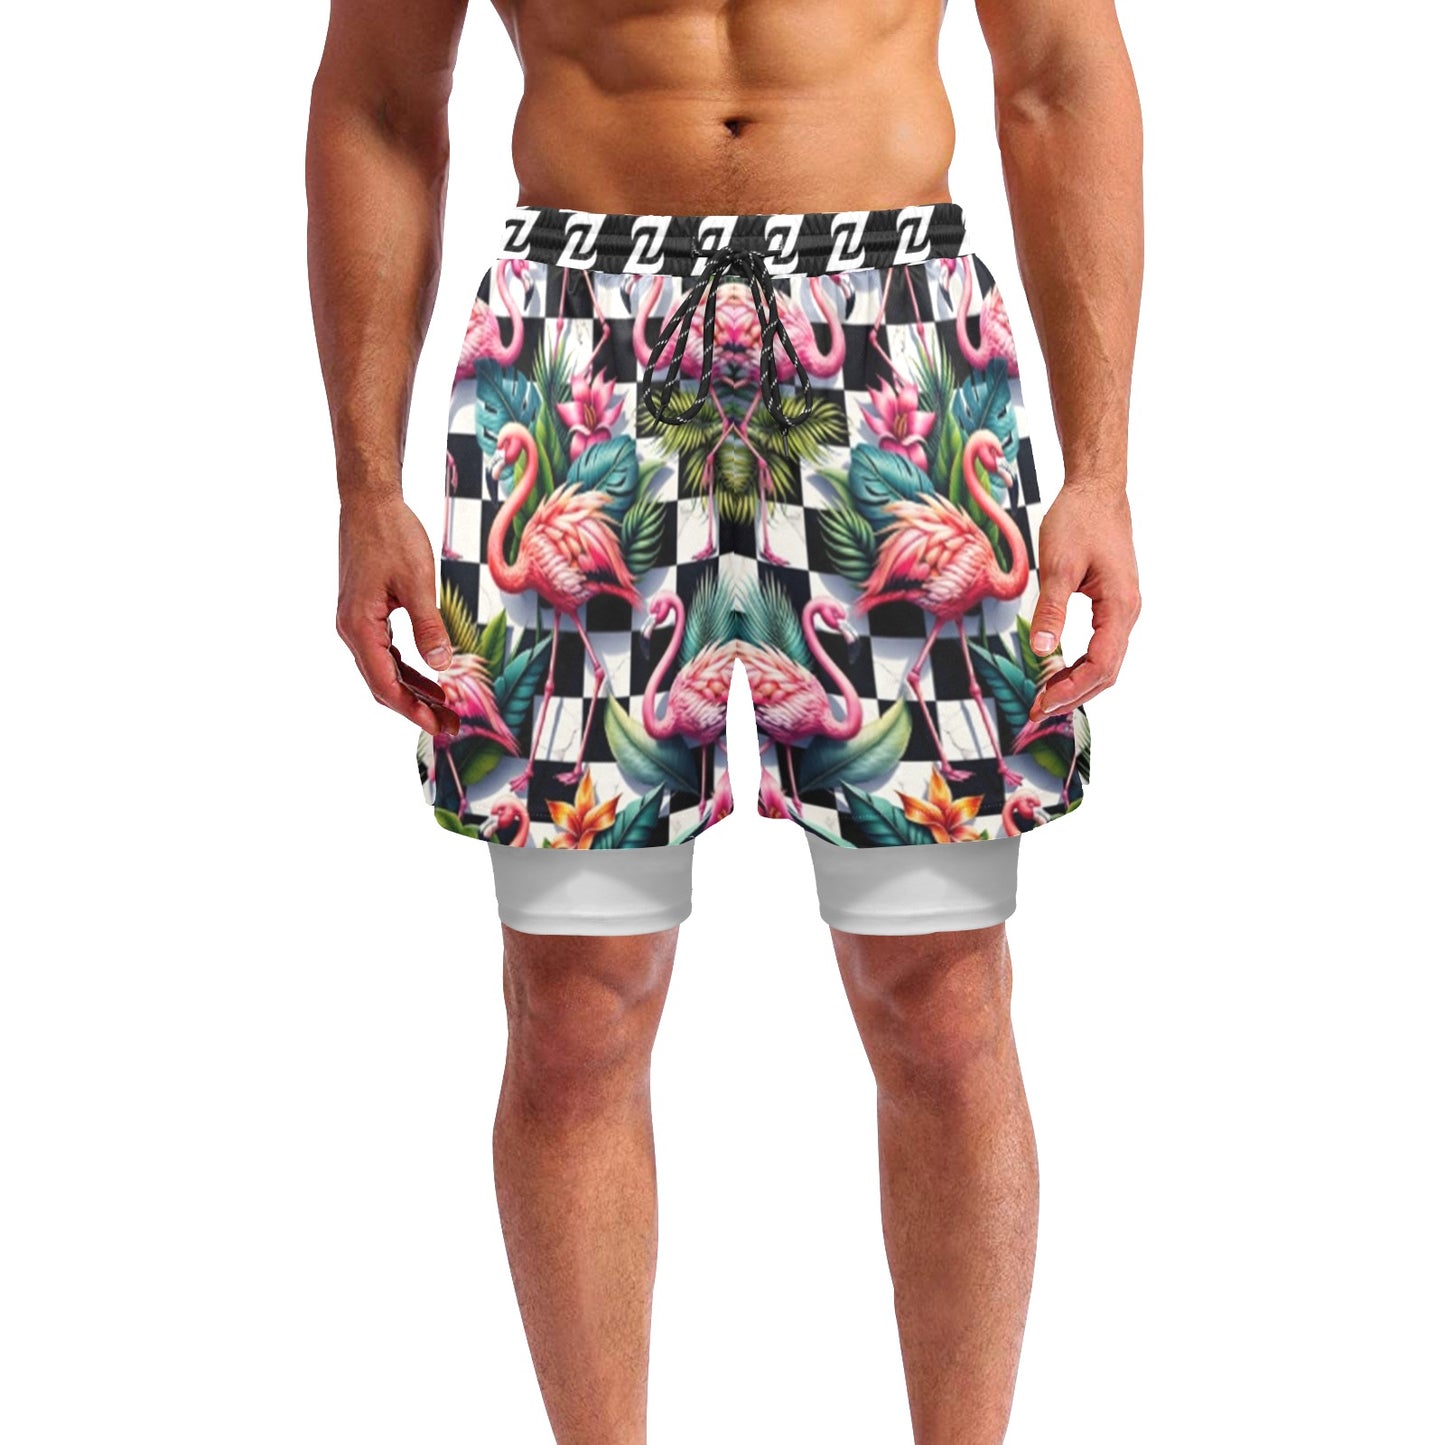 Zen Shorts with Liner - Flamingo